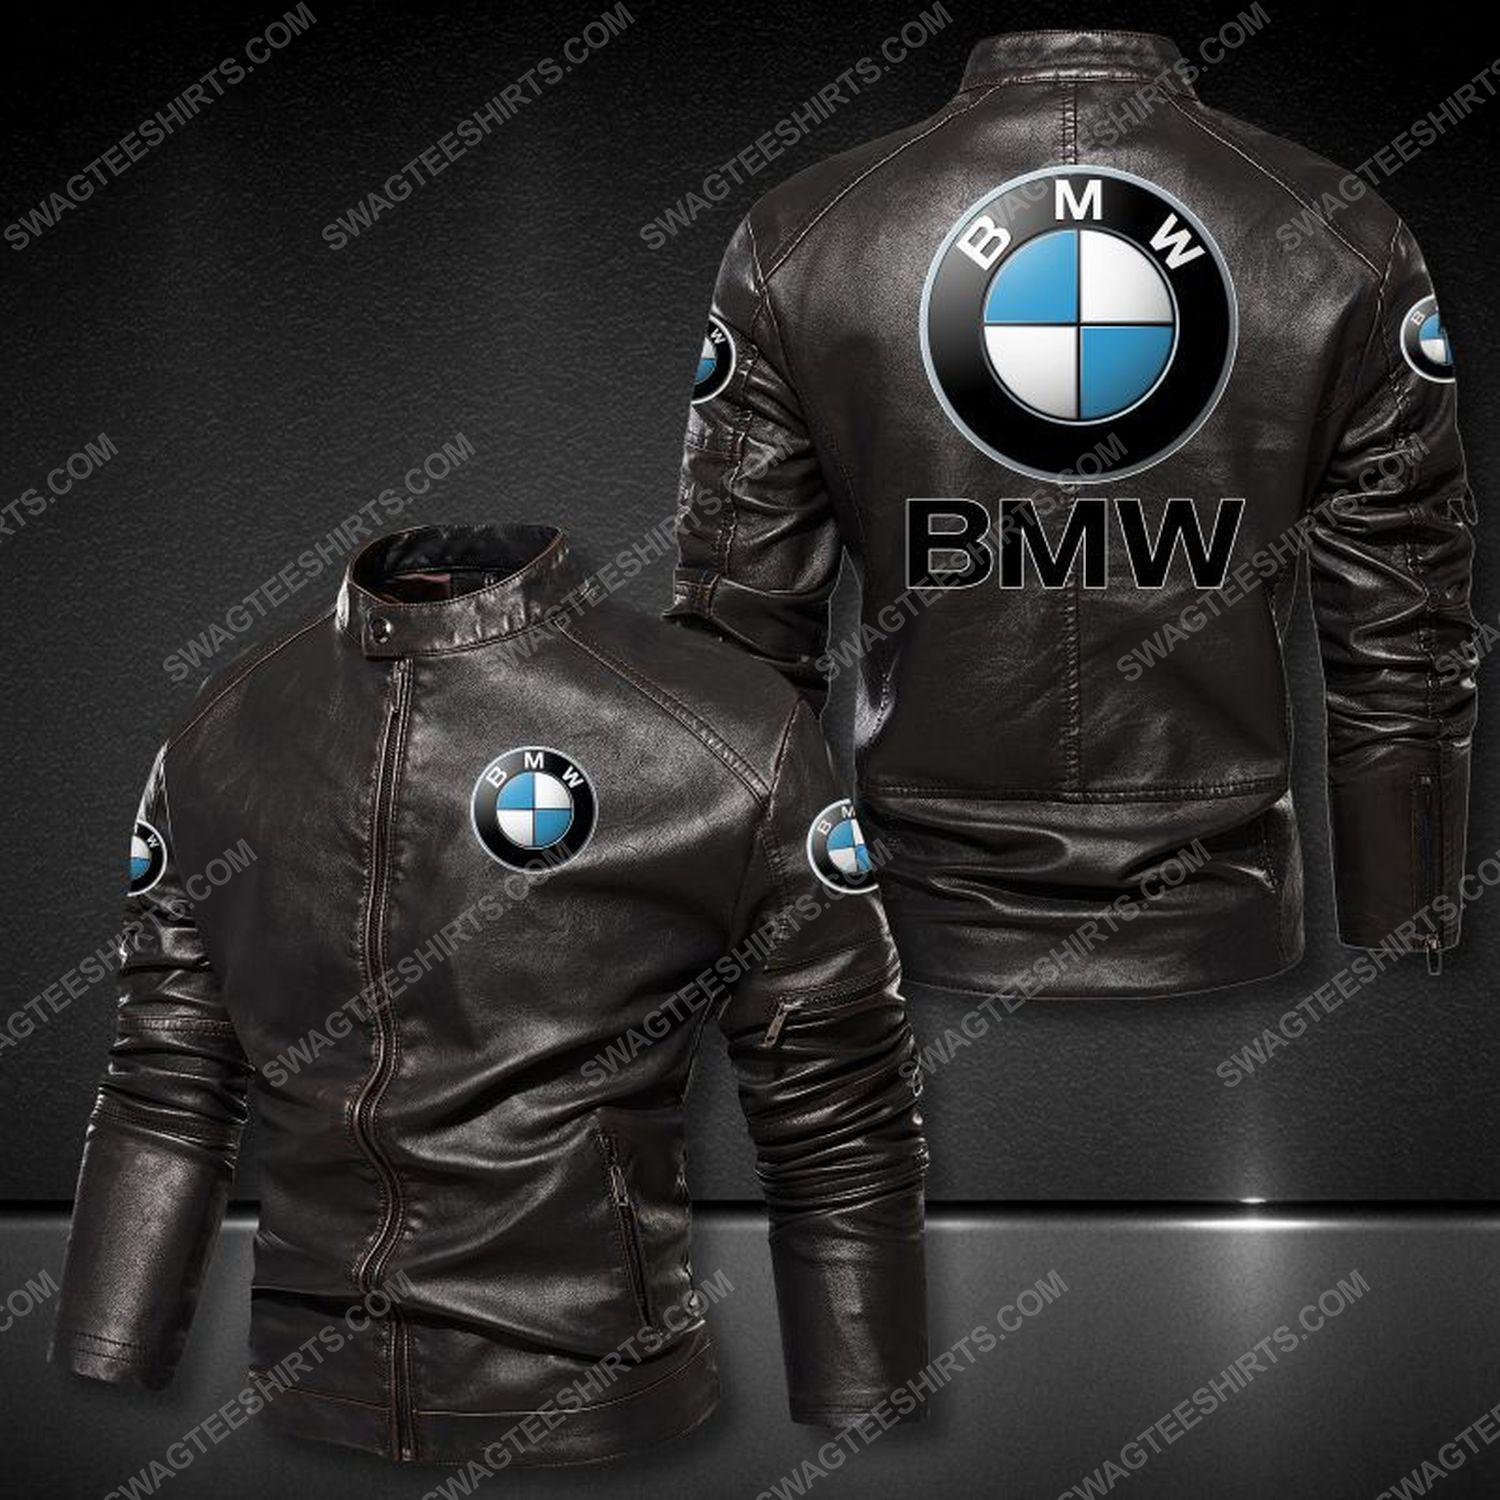 Bayerische motoren werke ag sports car leather jacket 1 - Copy